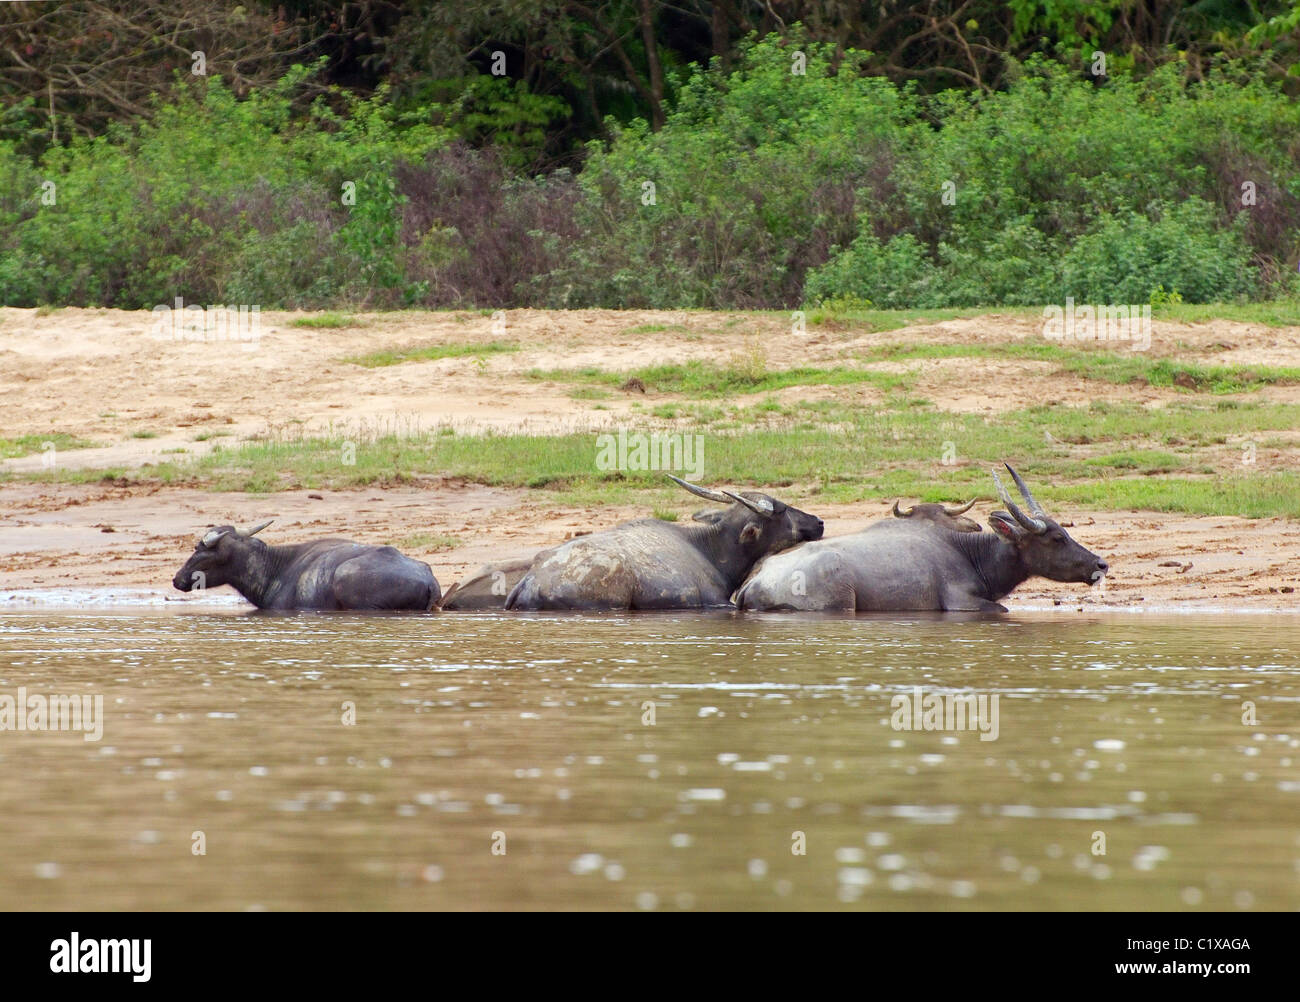 Water buffalo or domestic Asian water buffalo (Bubalus bubalis) Stock Photo